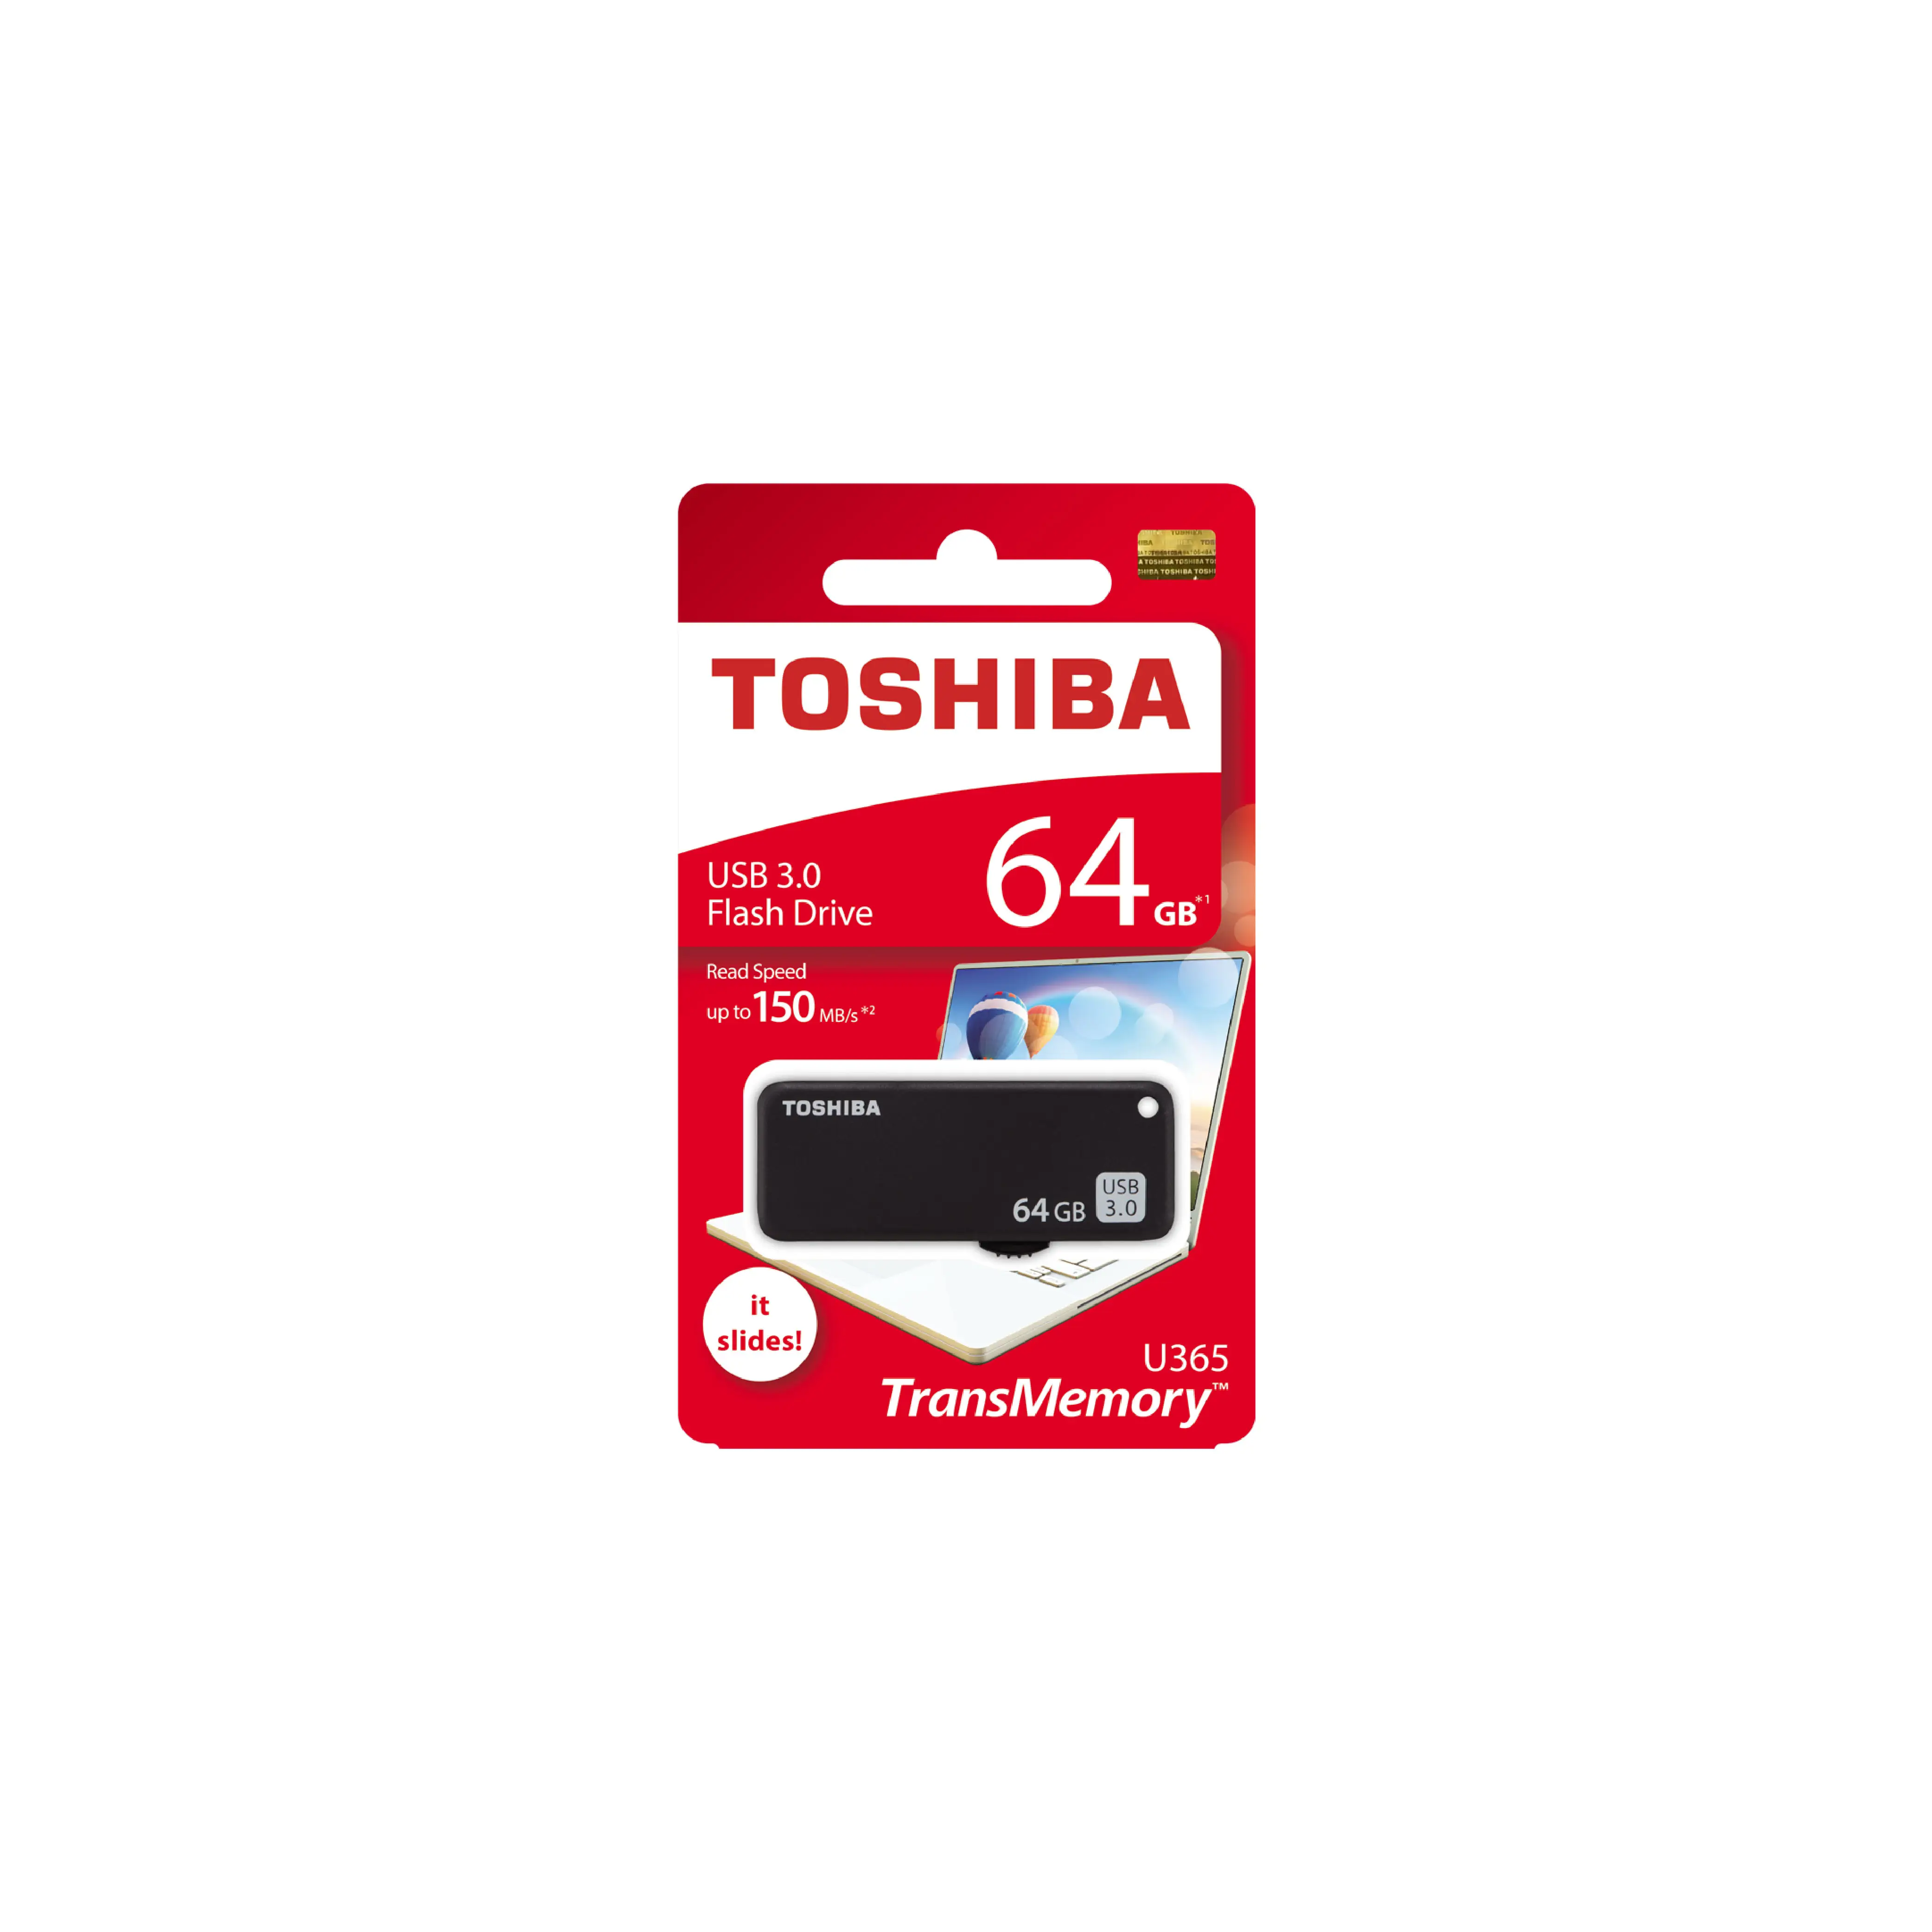 Melhor vendedor item memória de excelente qualidade toshiba u365 64gb slide disk usb3.0 ler 150gb usb flash drive